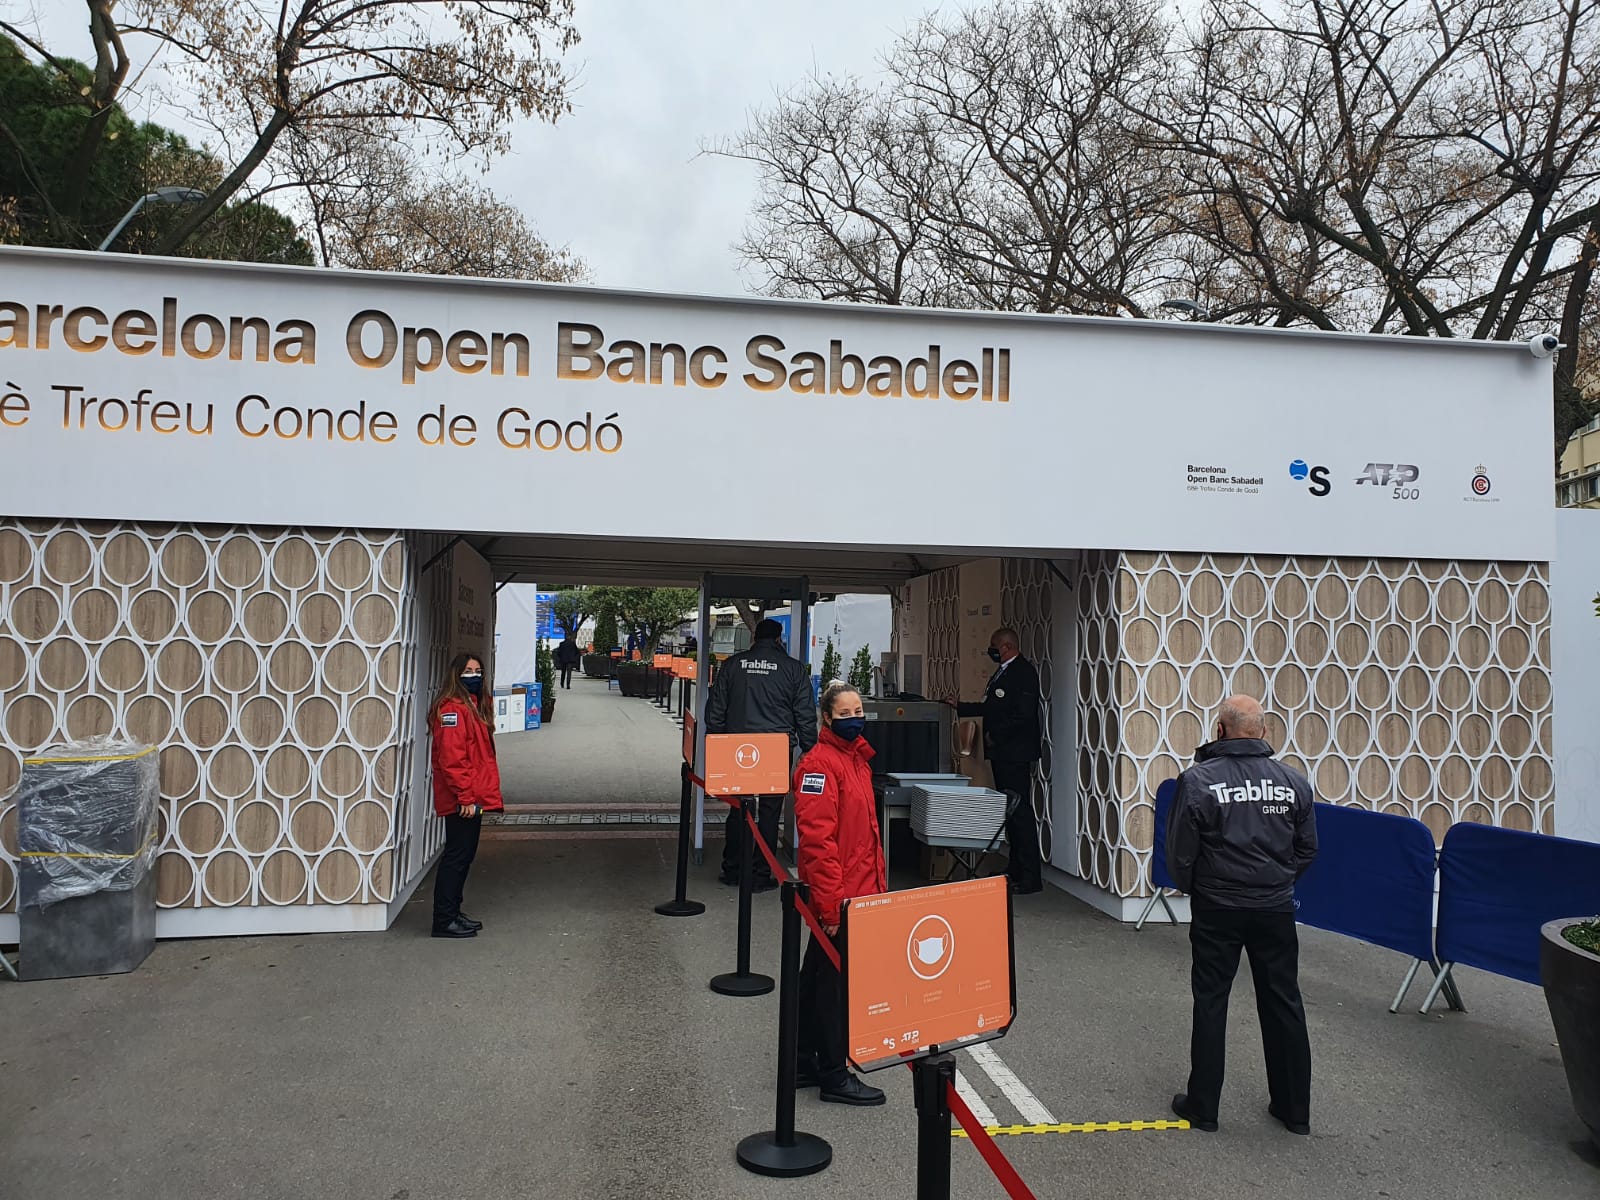 Open Banc Sabadell -Trofeo Conde de Godó